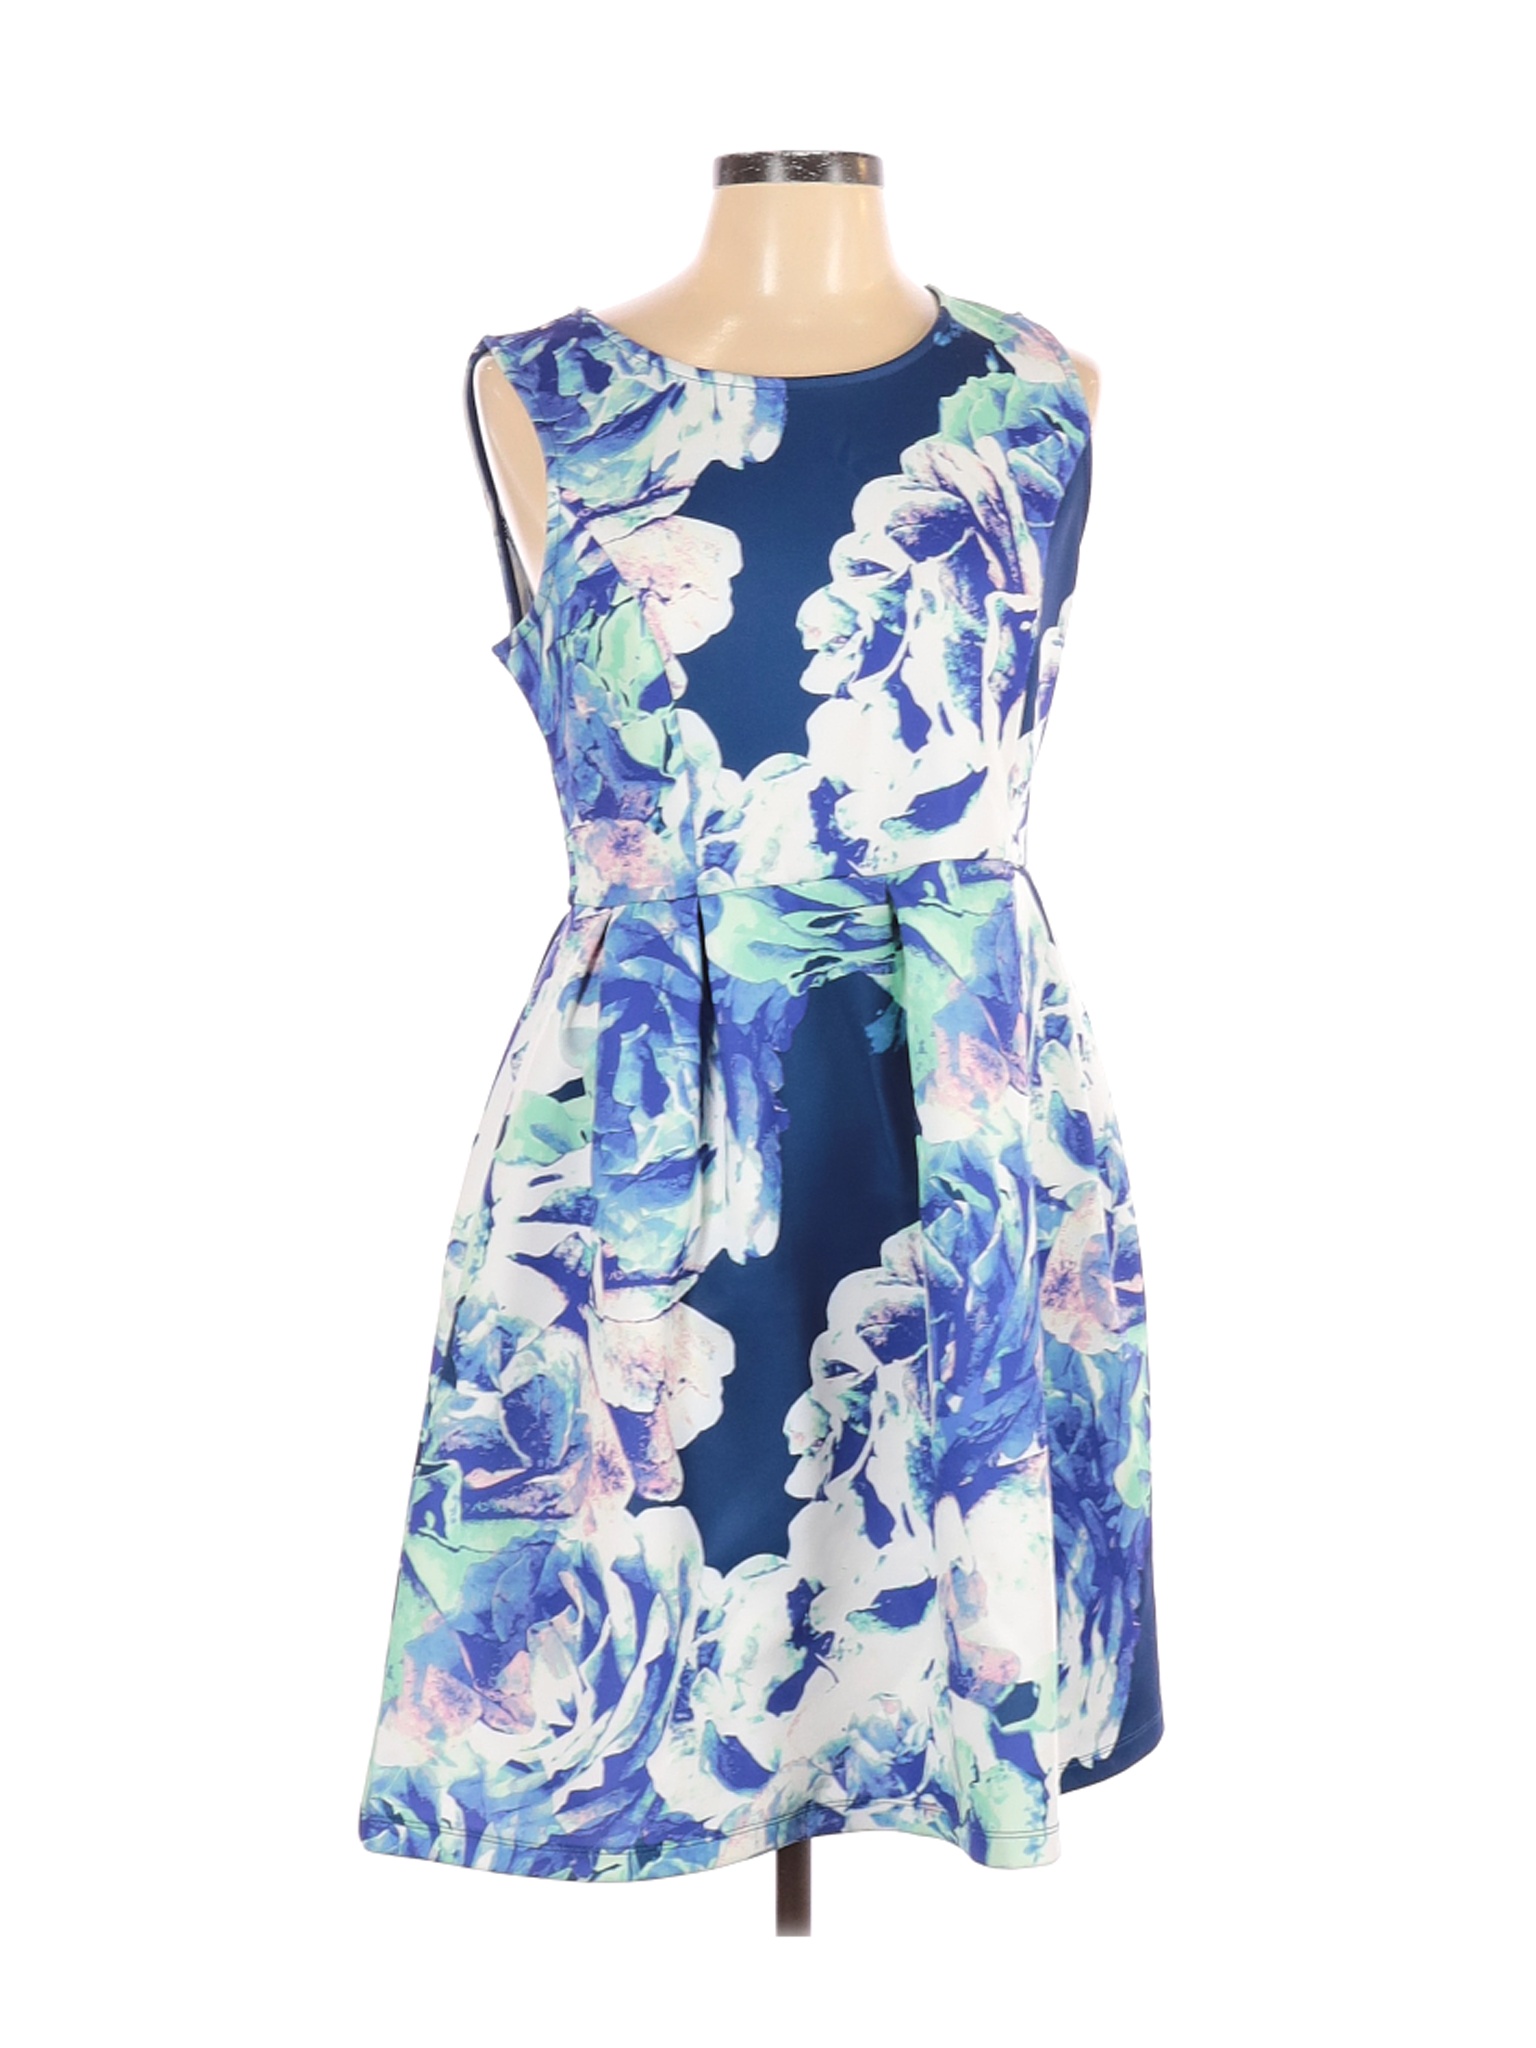 Apt. 9 Women Blue Casual Dress L | eBay